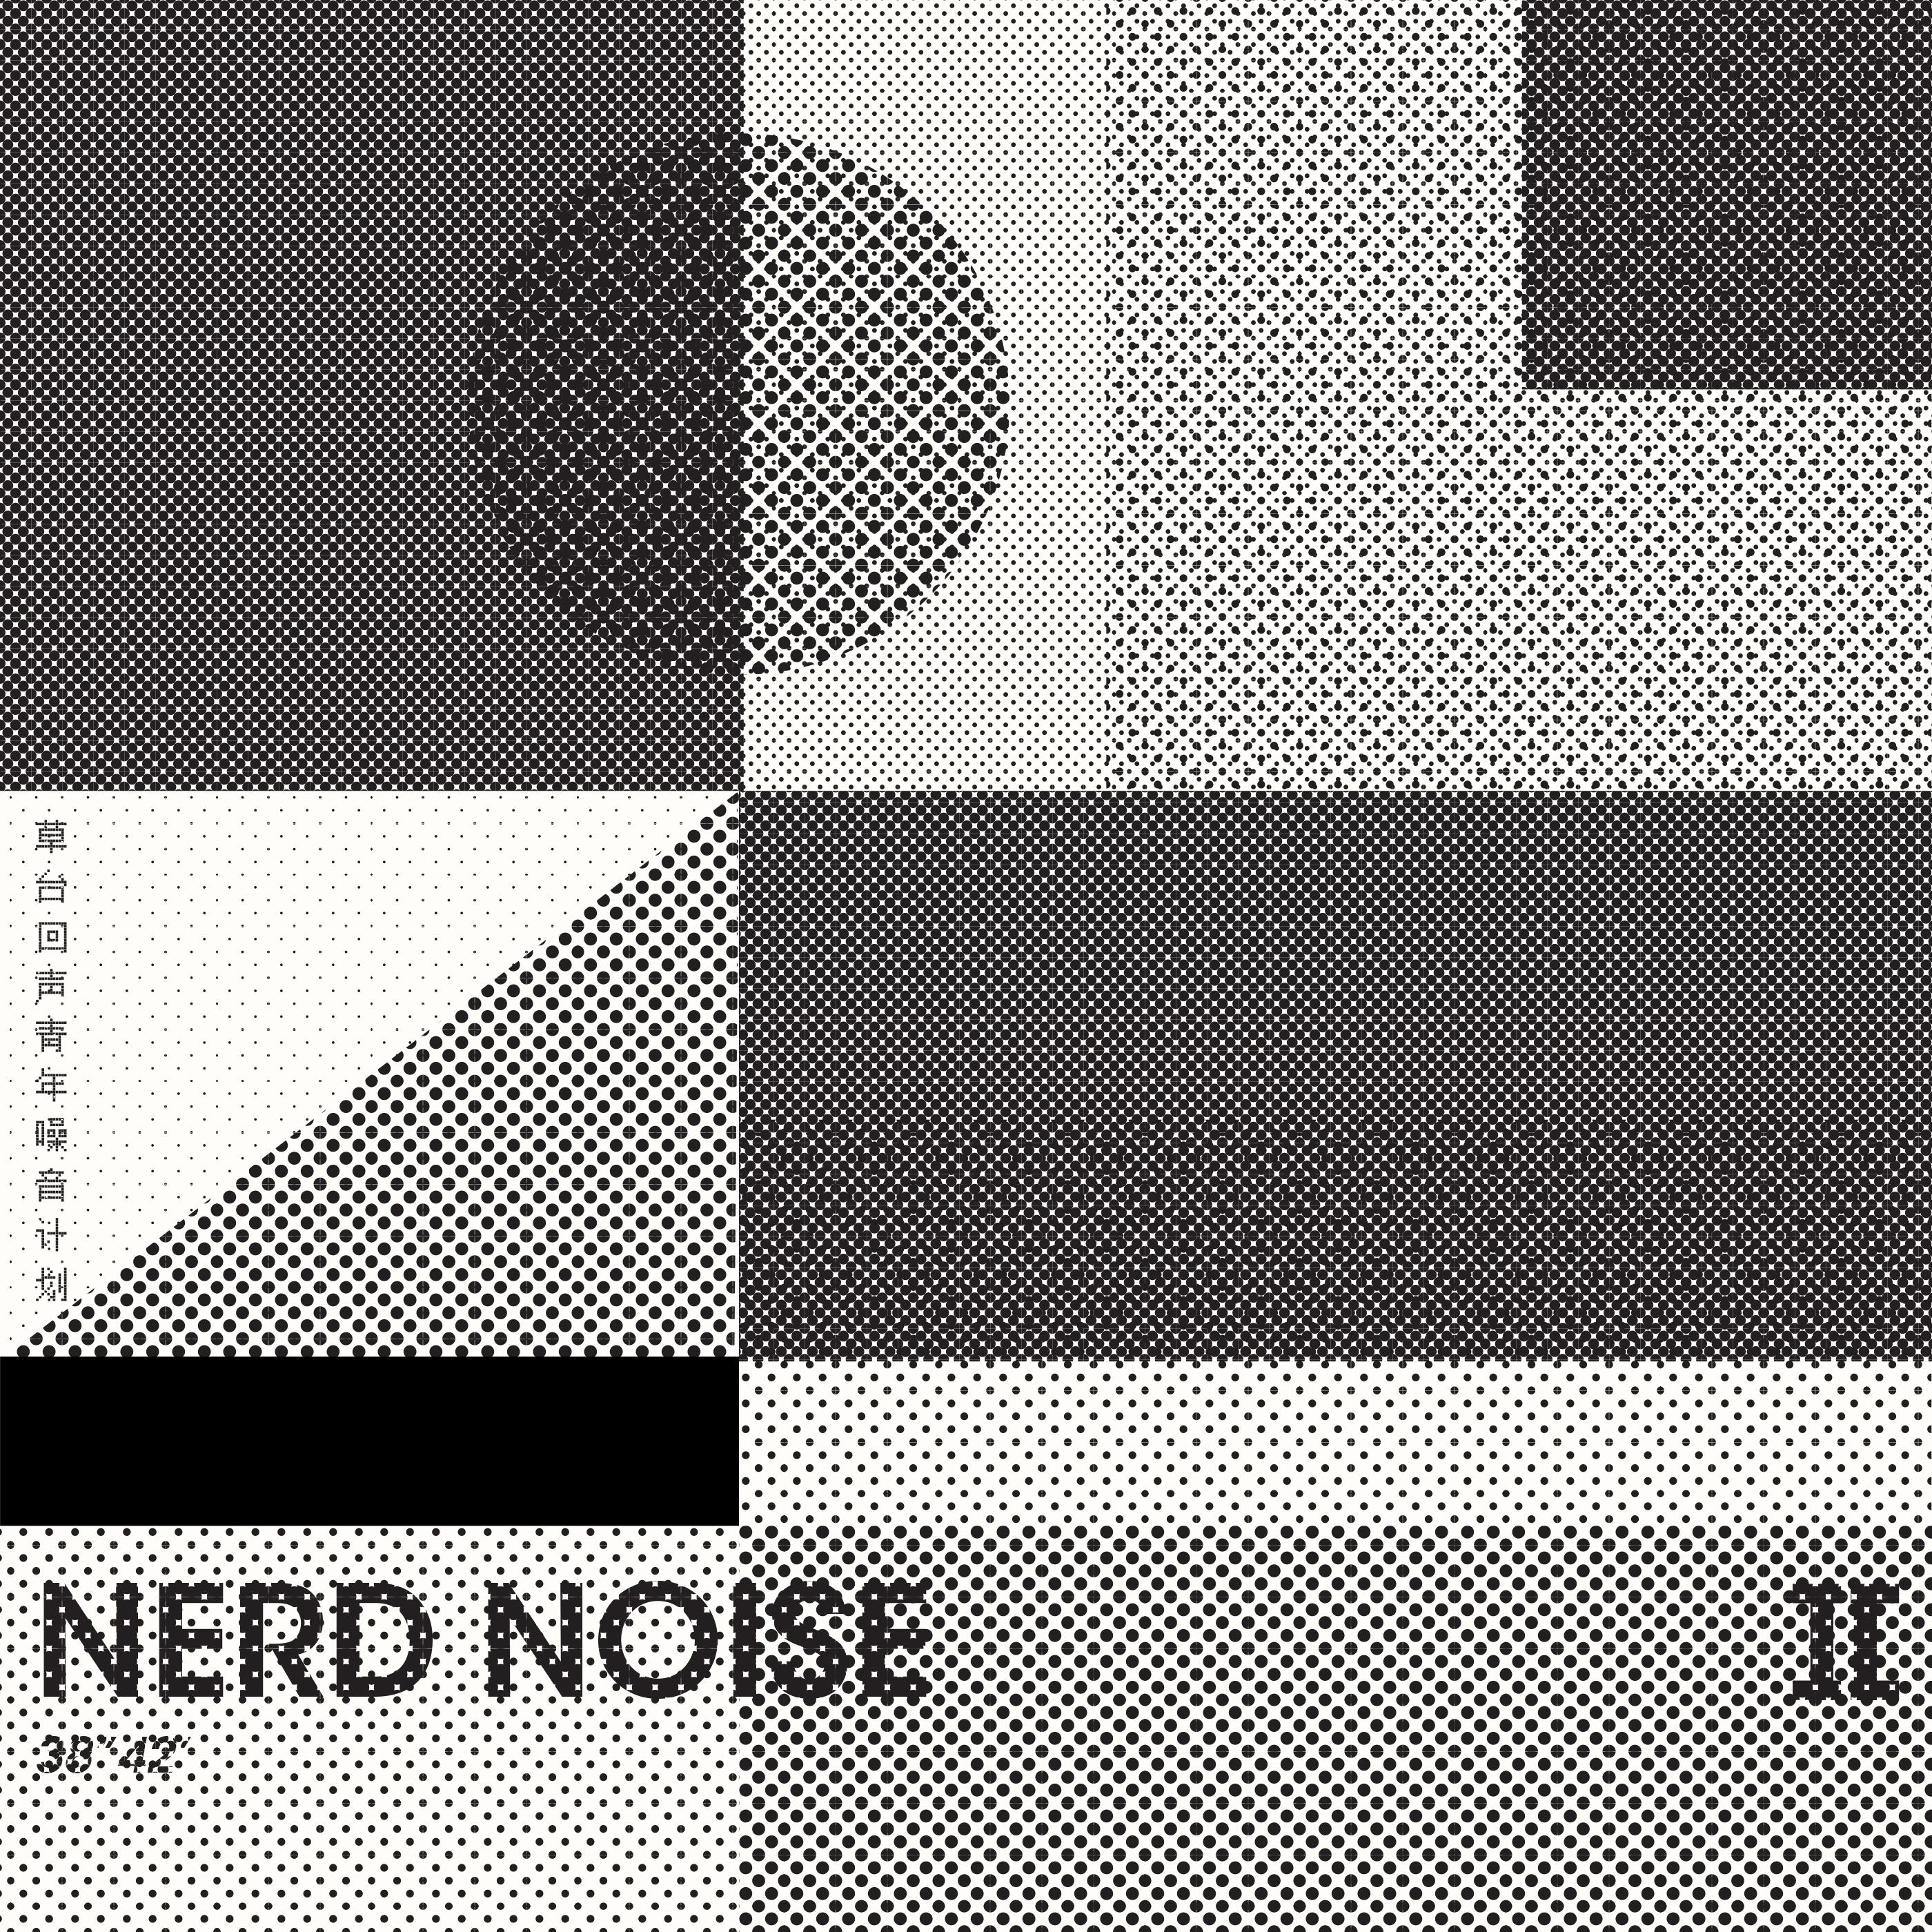 Nerd Noise